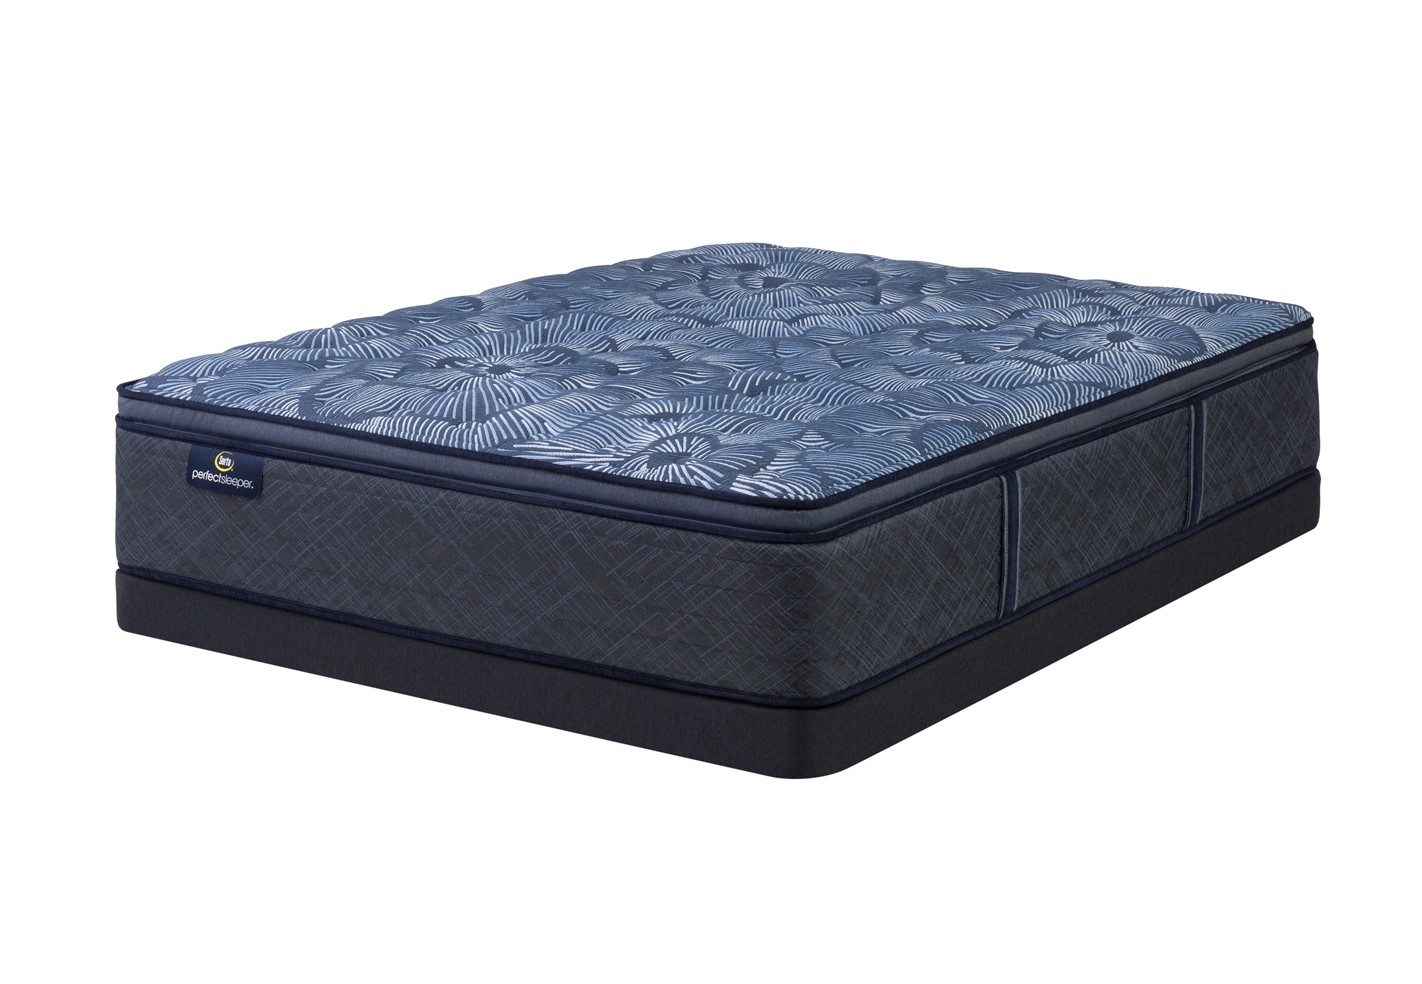 Photo of Serta Perfect Sleeper Cobalt Calm Medium Pillowtop mattress.